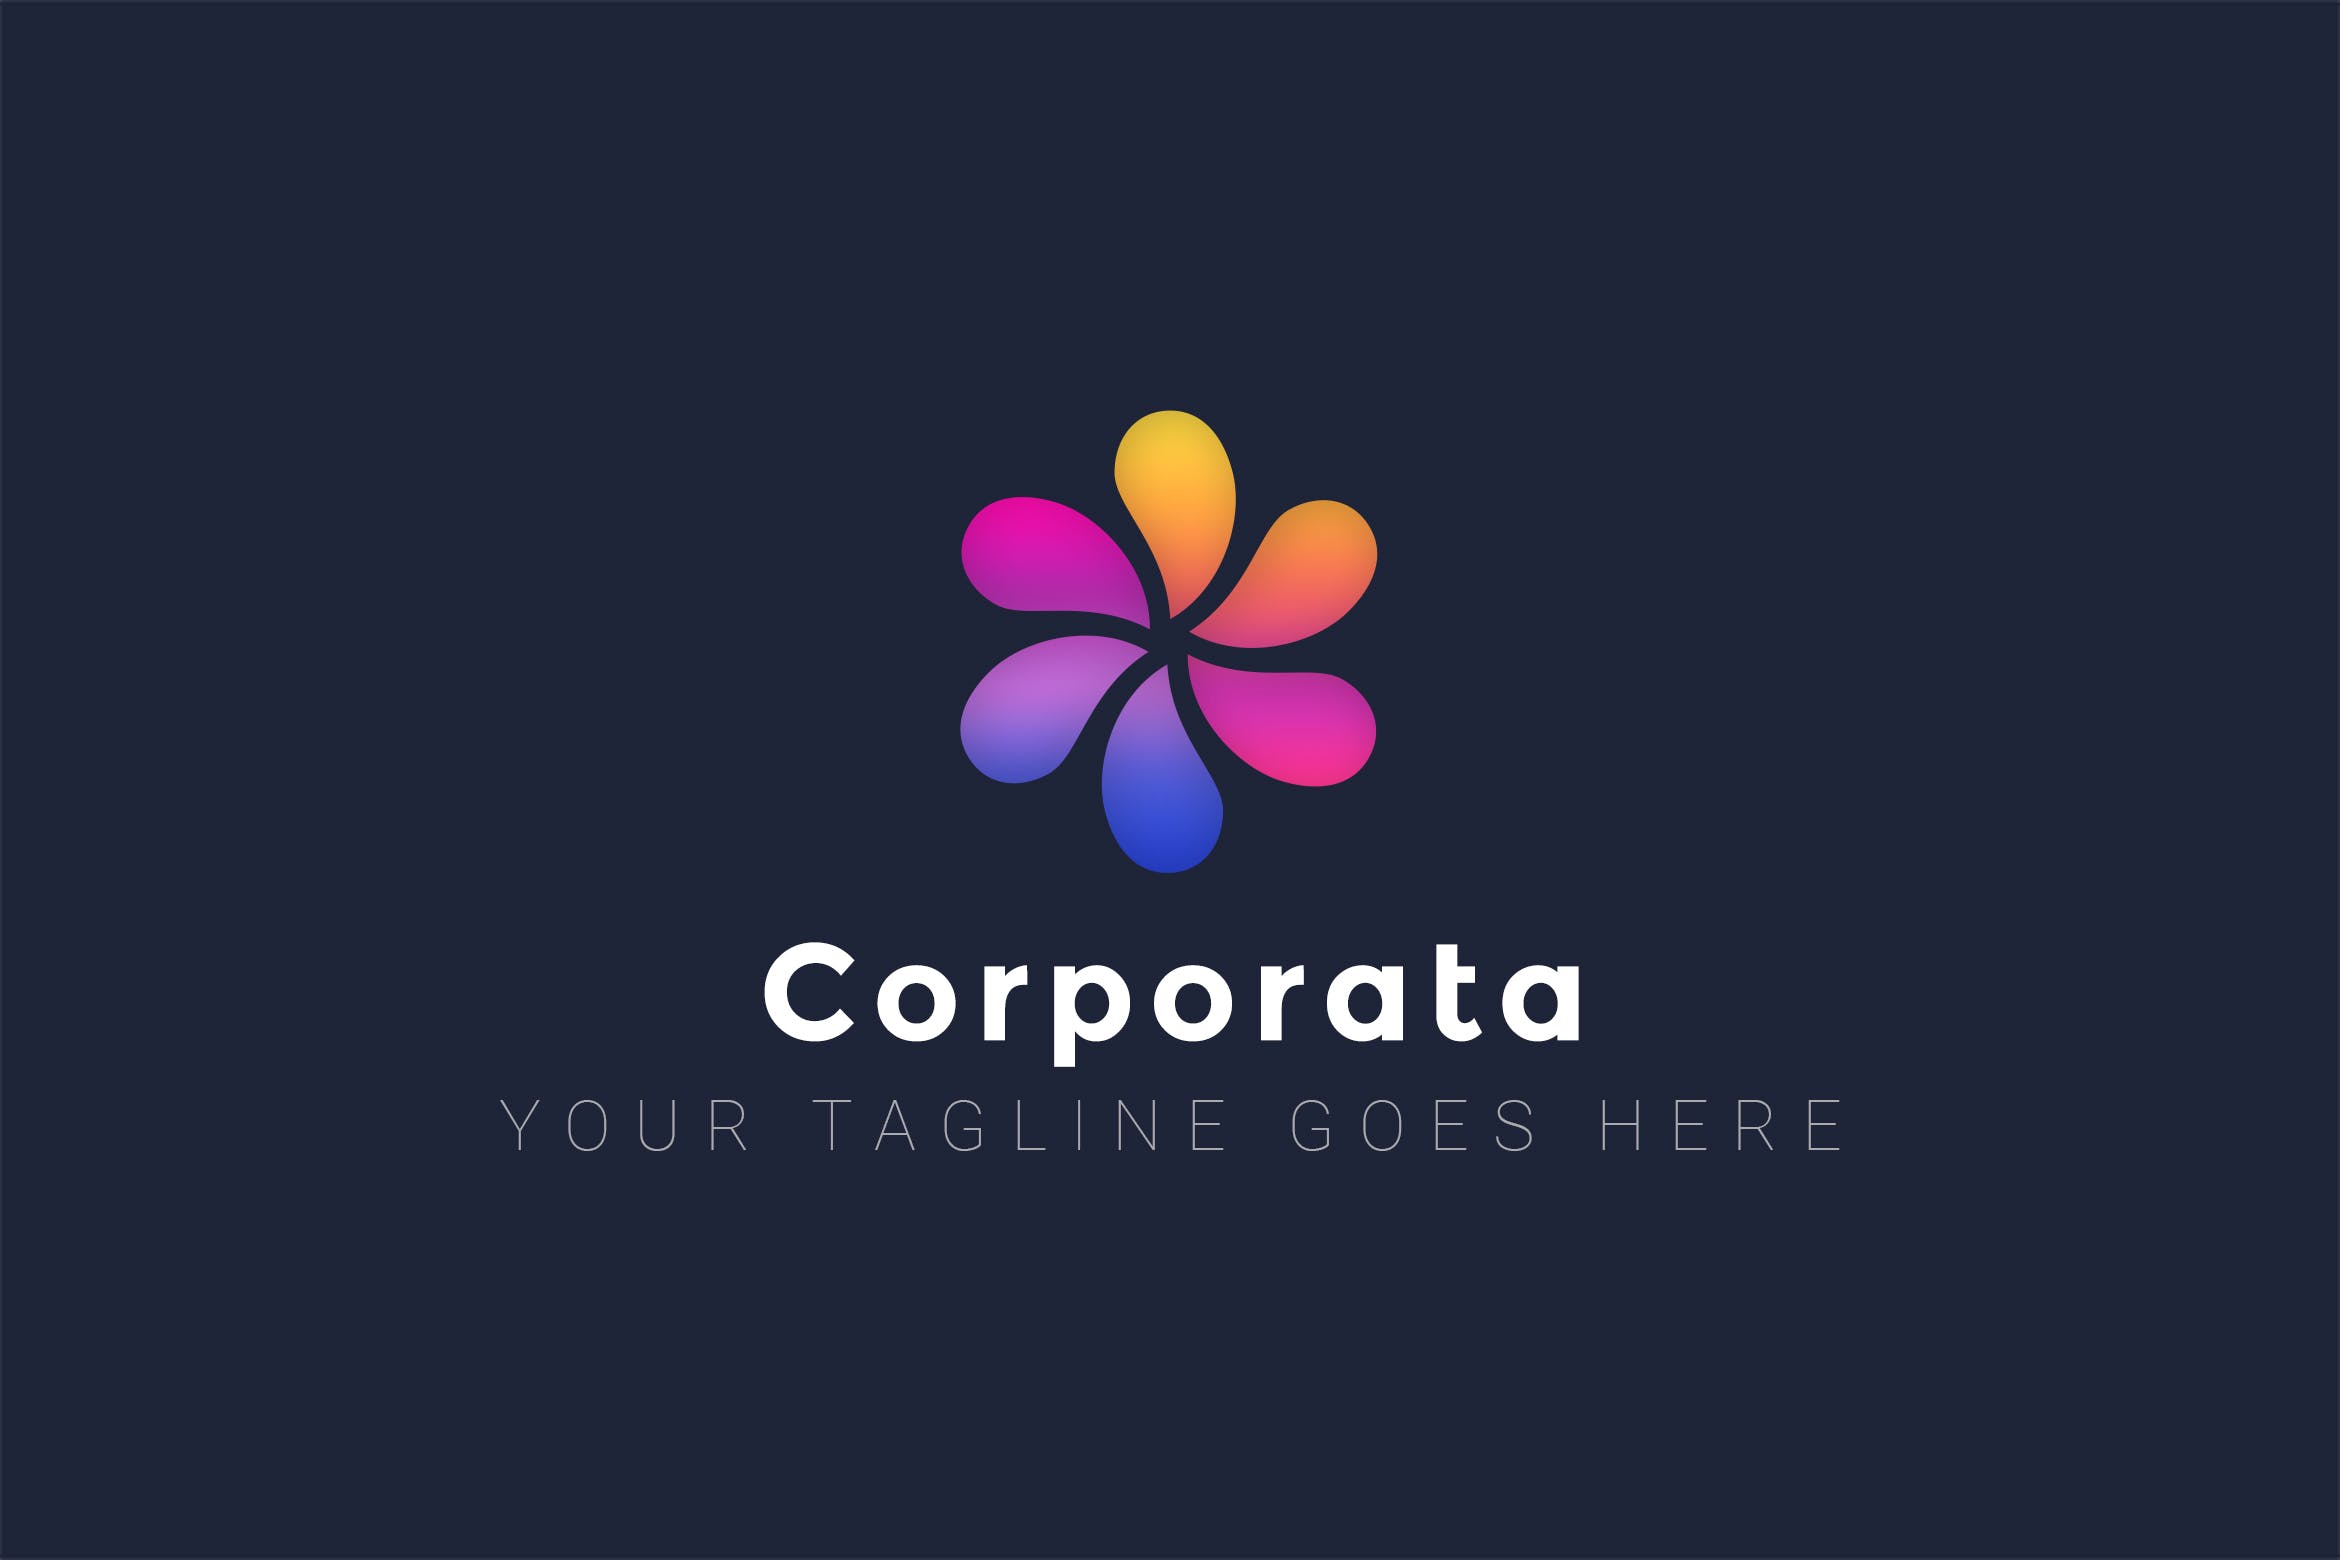 渐变彩色花瓣图形Logo设计素材库精选模板 Corporata – Multipurpose Logo Design插图